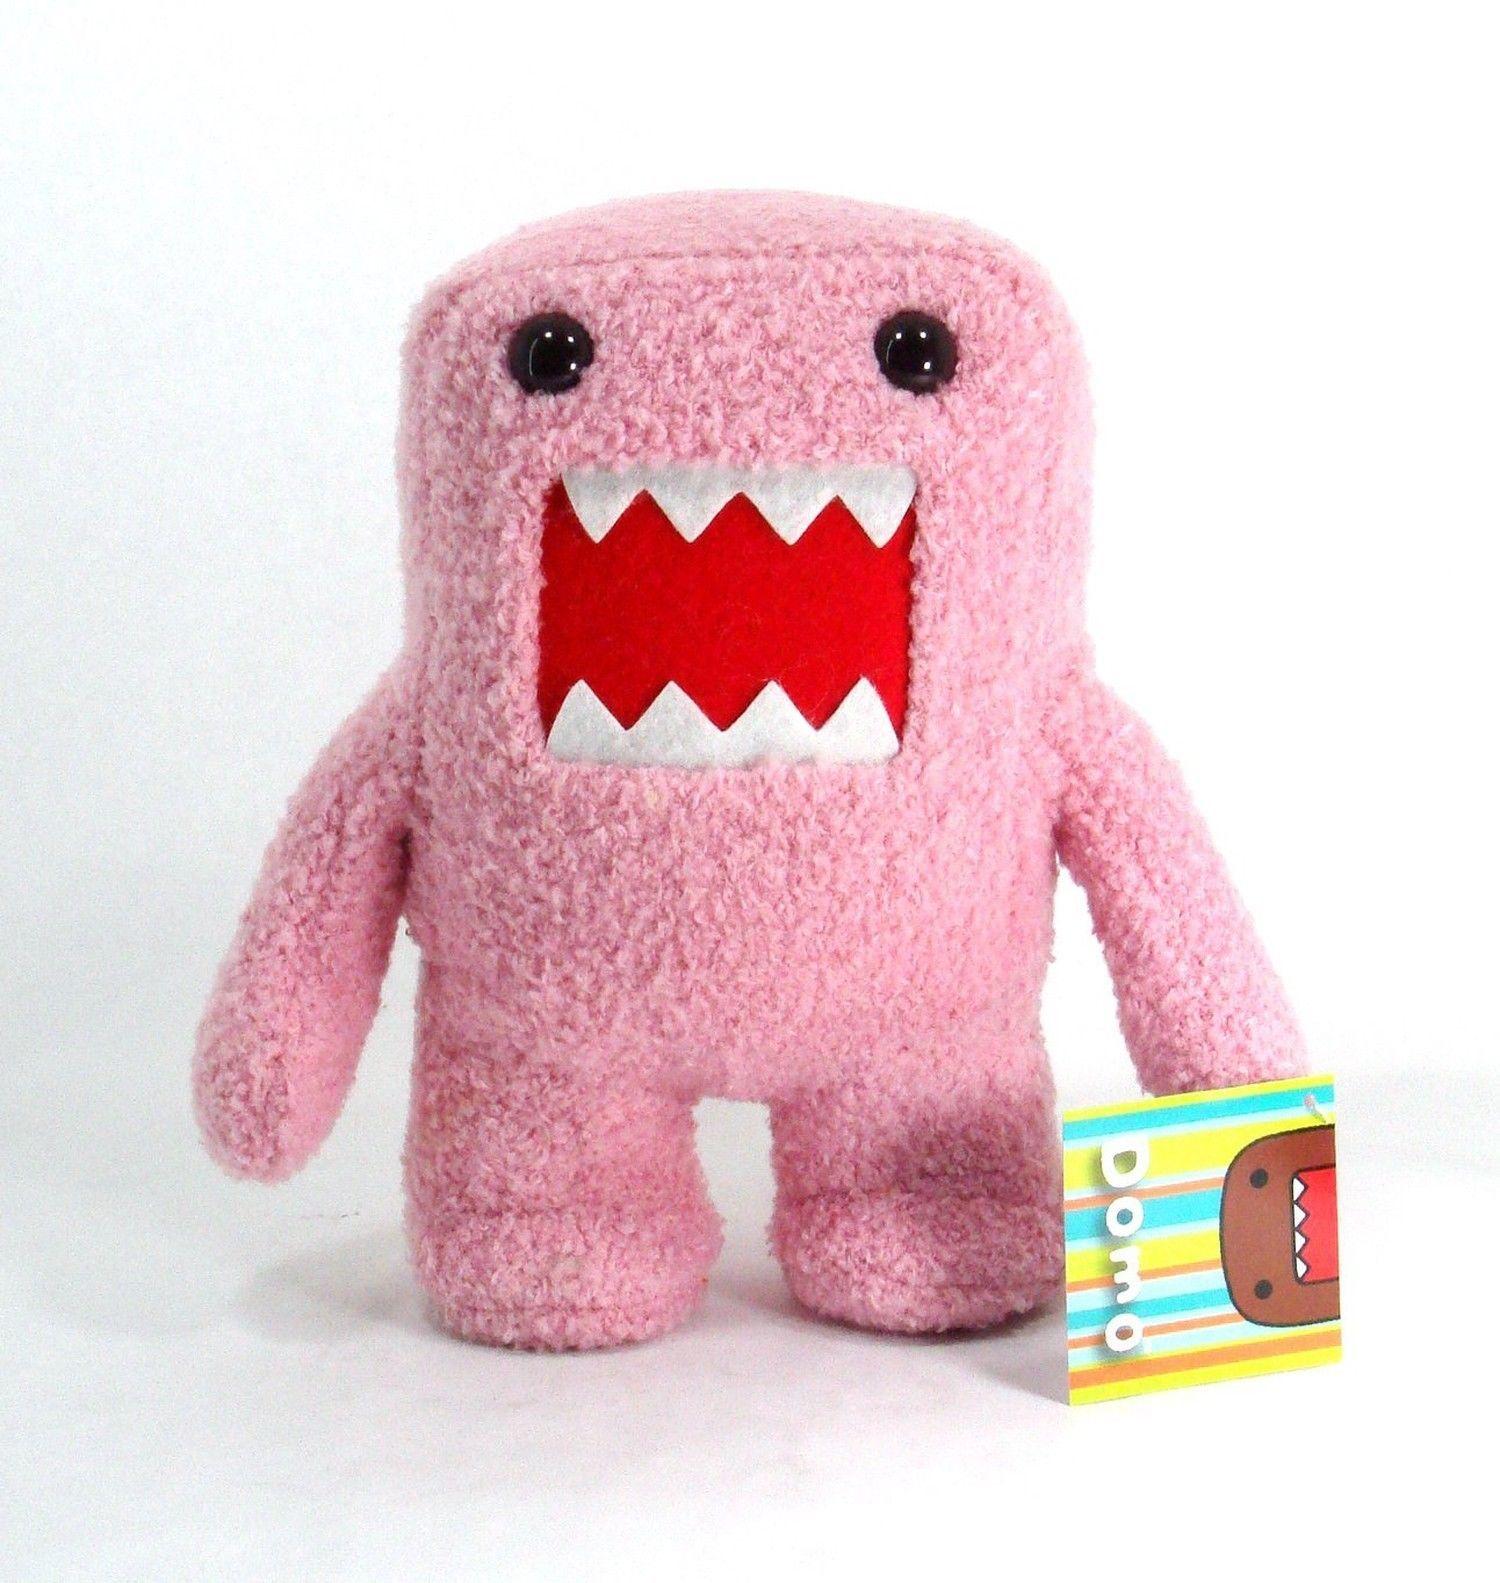 Domo Pink Plush 12 Monster Toy Domo Kun Soft Stuffed Nanco